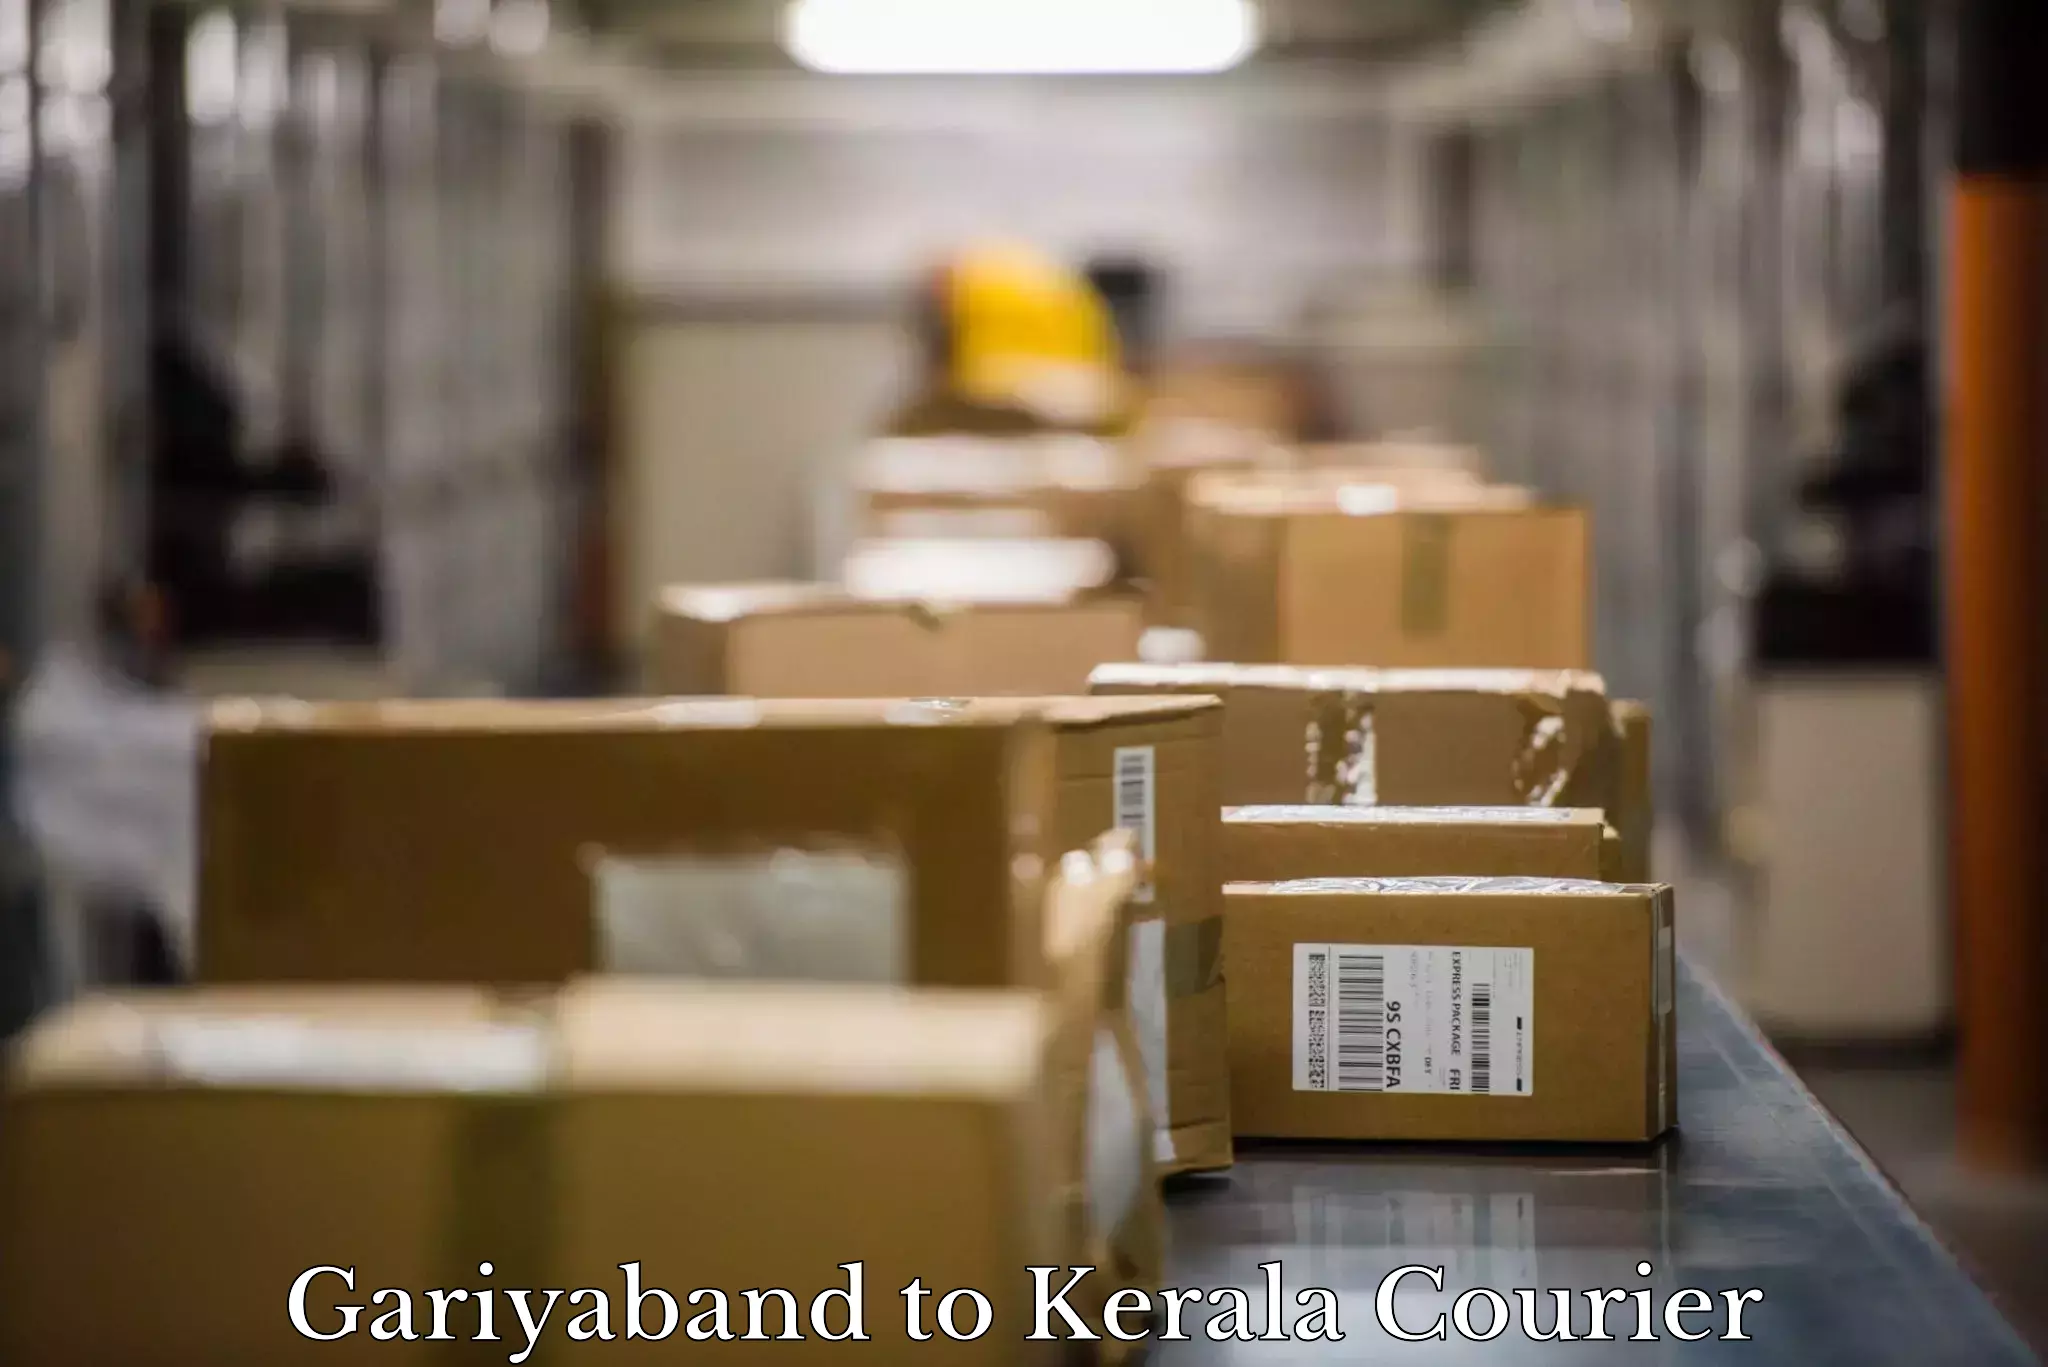 Furniture transport services Gariyaband to Kerala